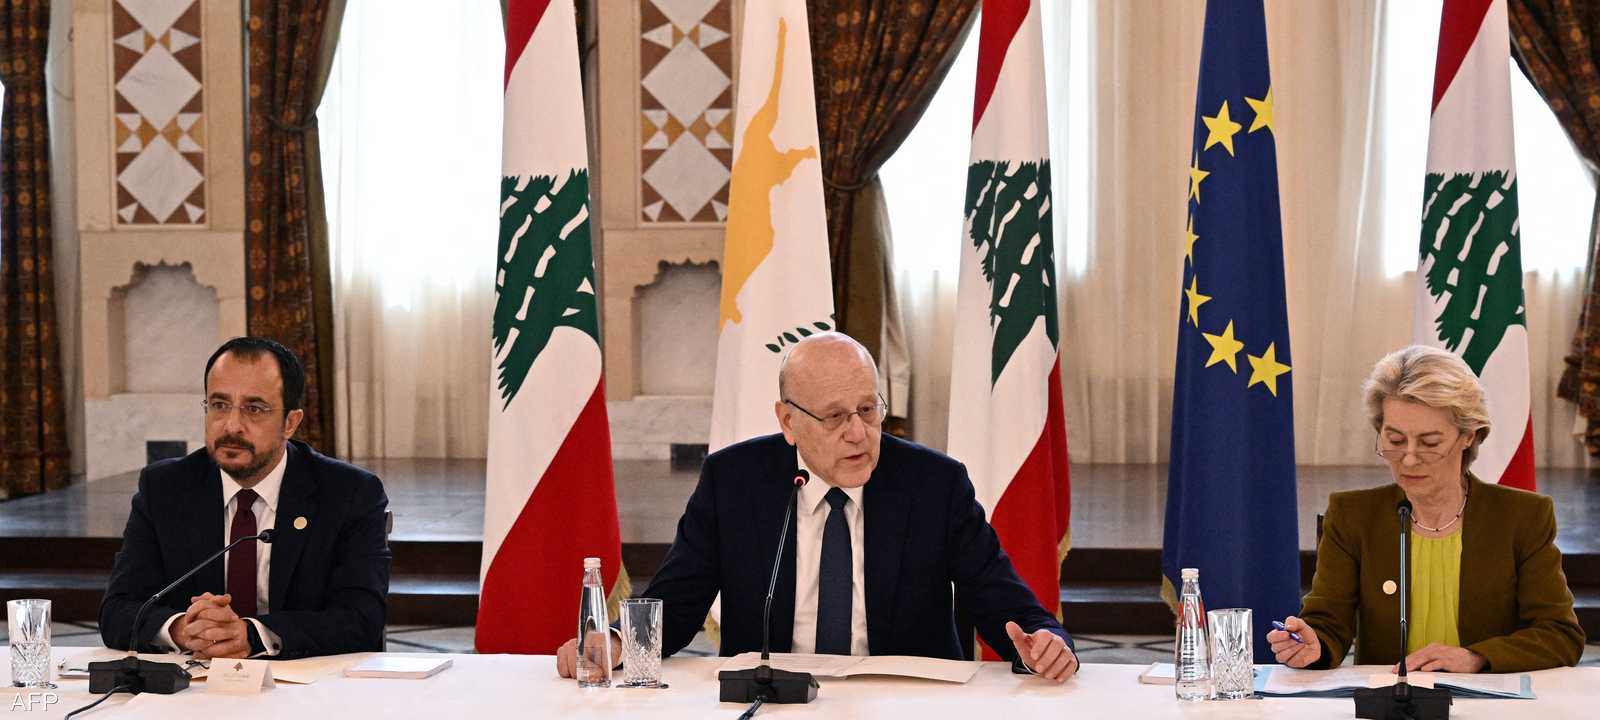 الاتحاد الأوروبي يعلن عن حزمة مالية لدعم لبنان